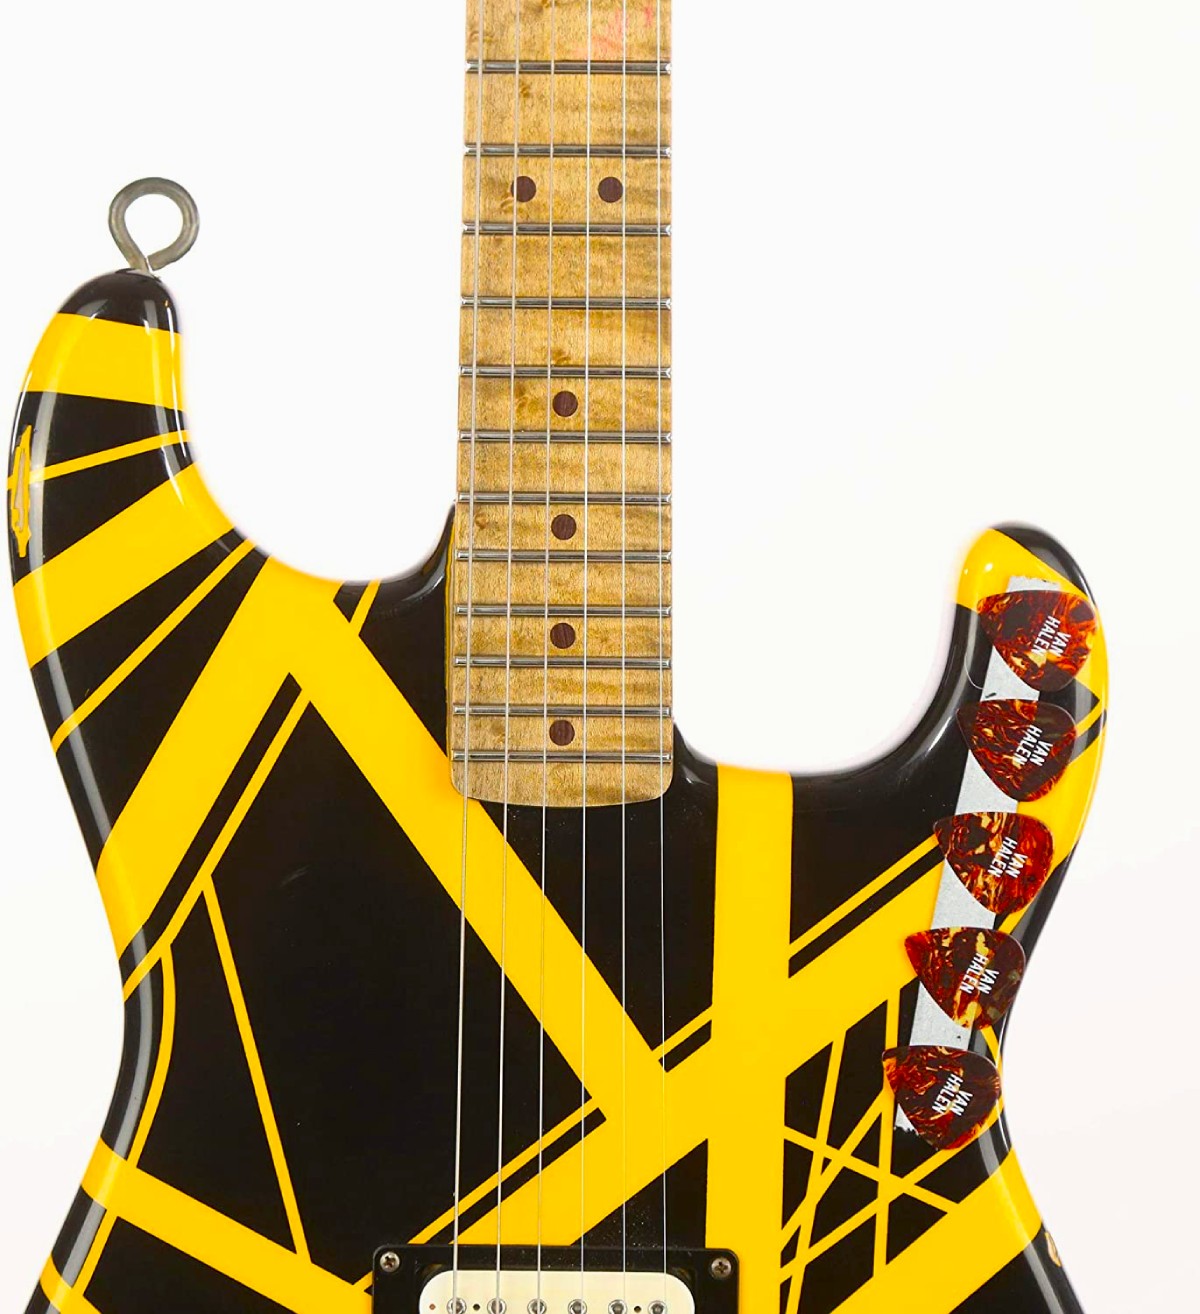 Bumblebee, Eddie Van Halen's famous guitar